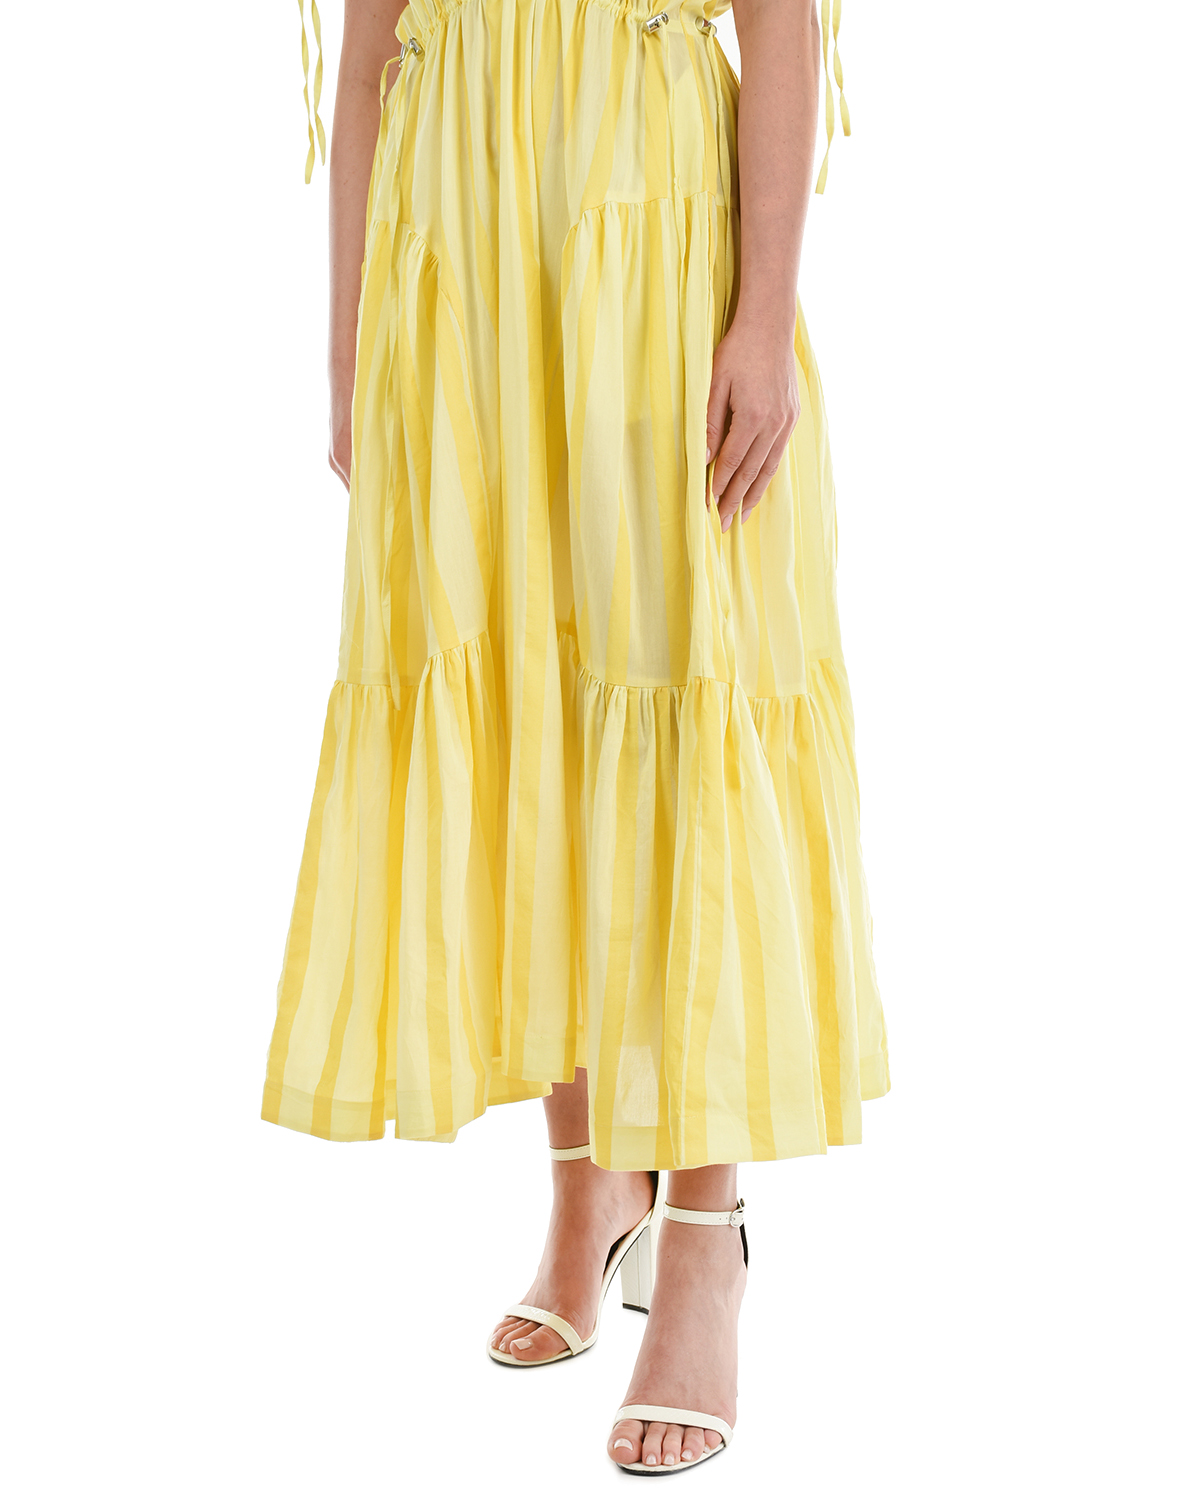 Желтое платье в полоску LOVE BIRDS, размер 40, цвет желтый - фото 9